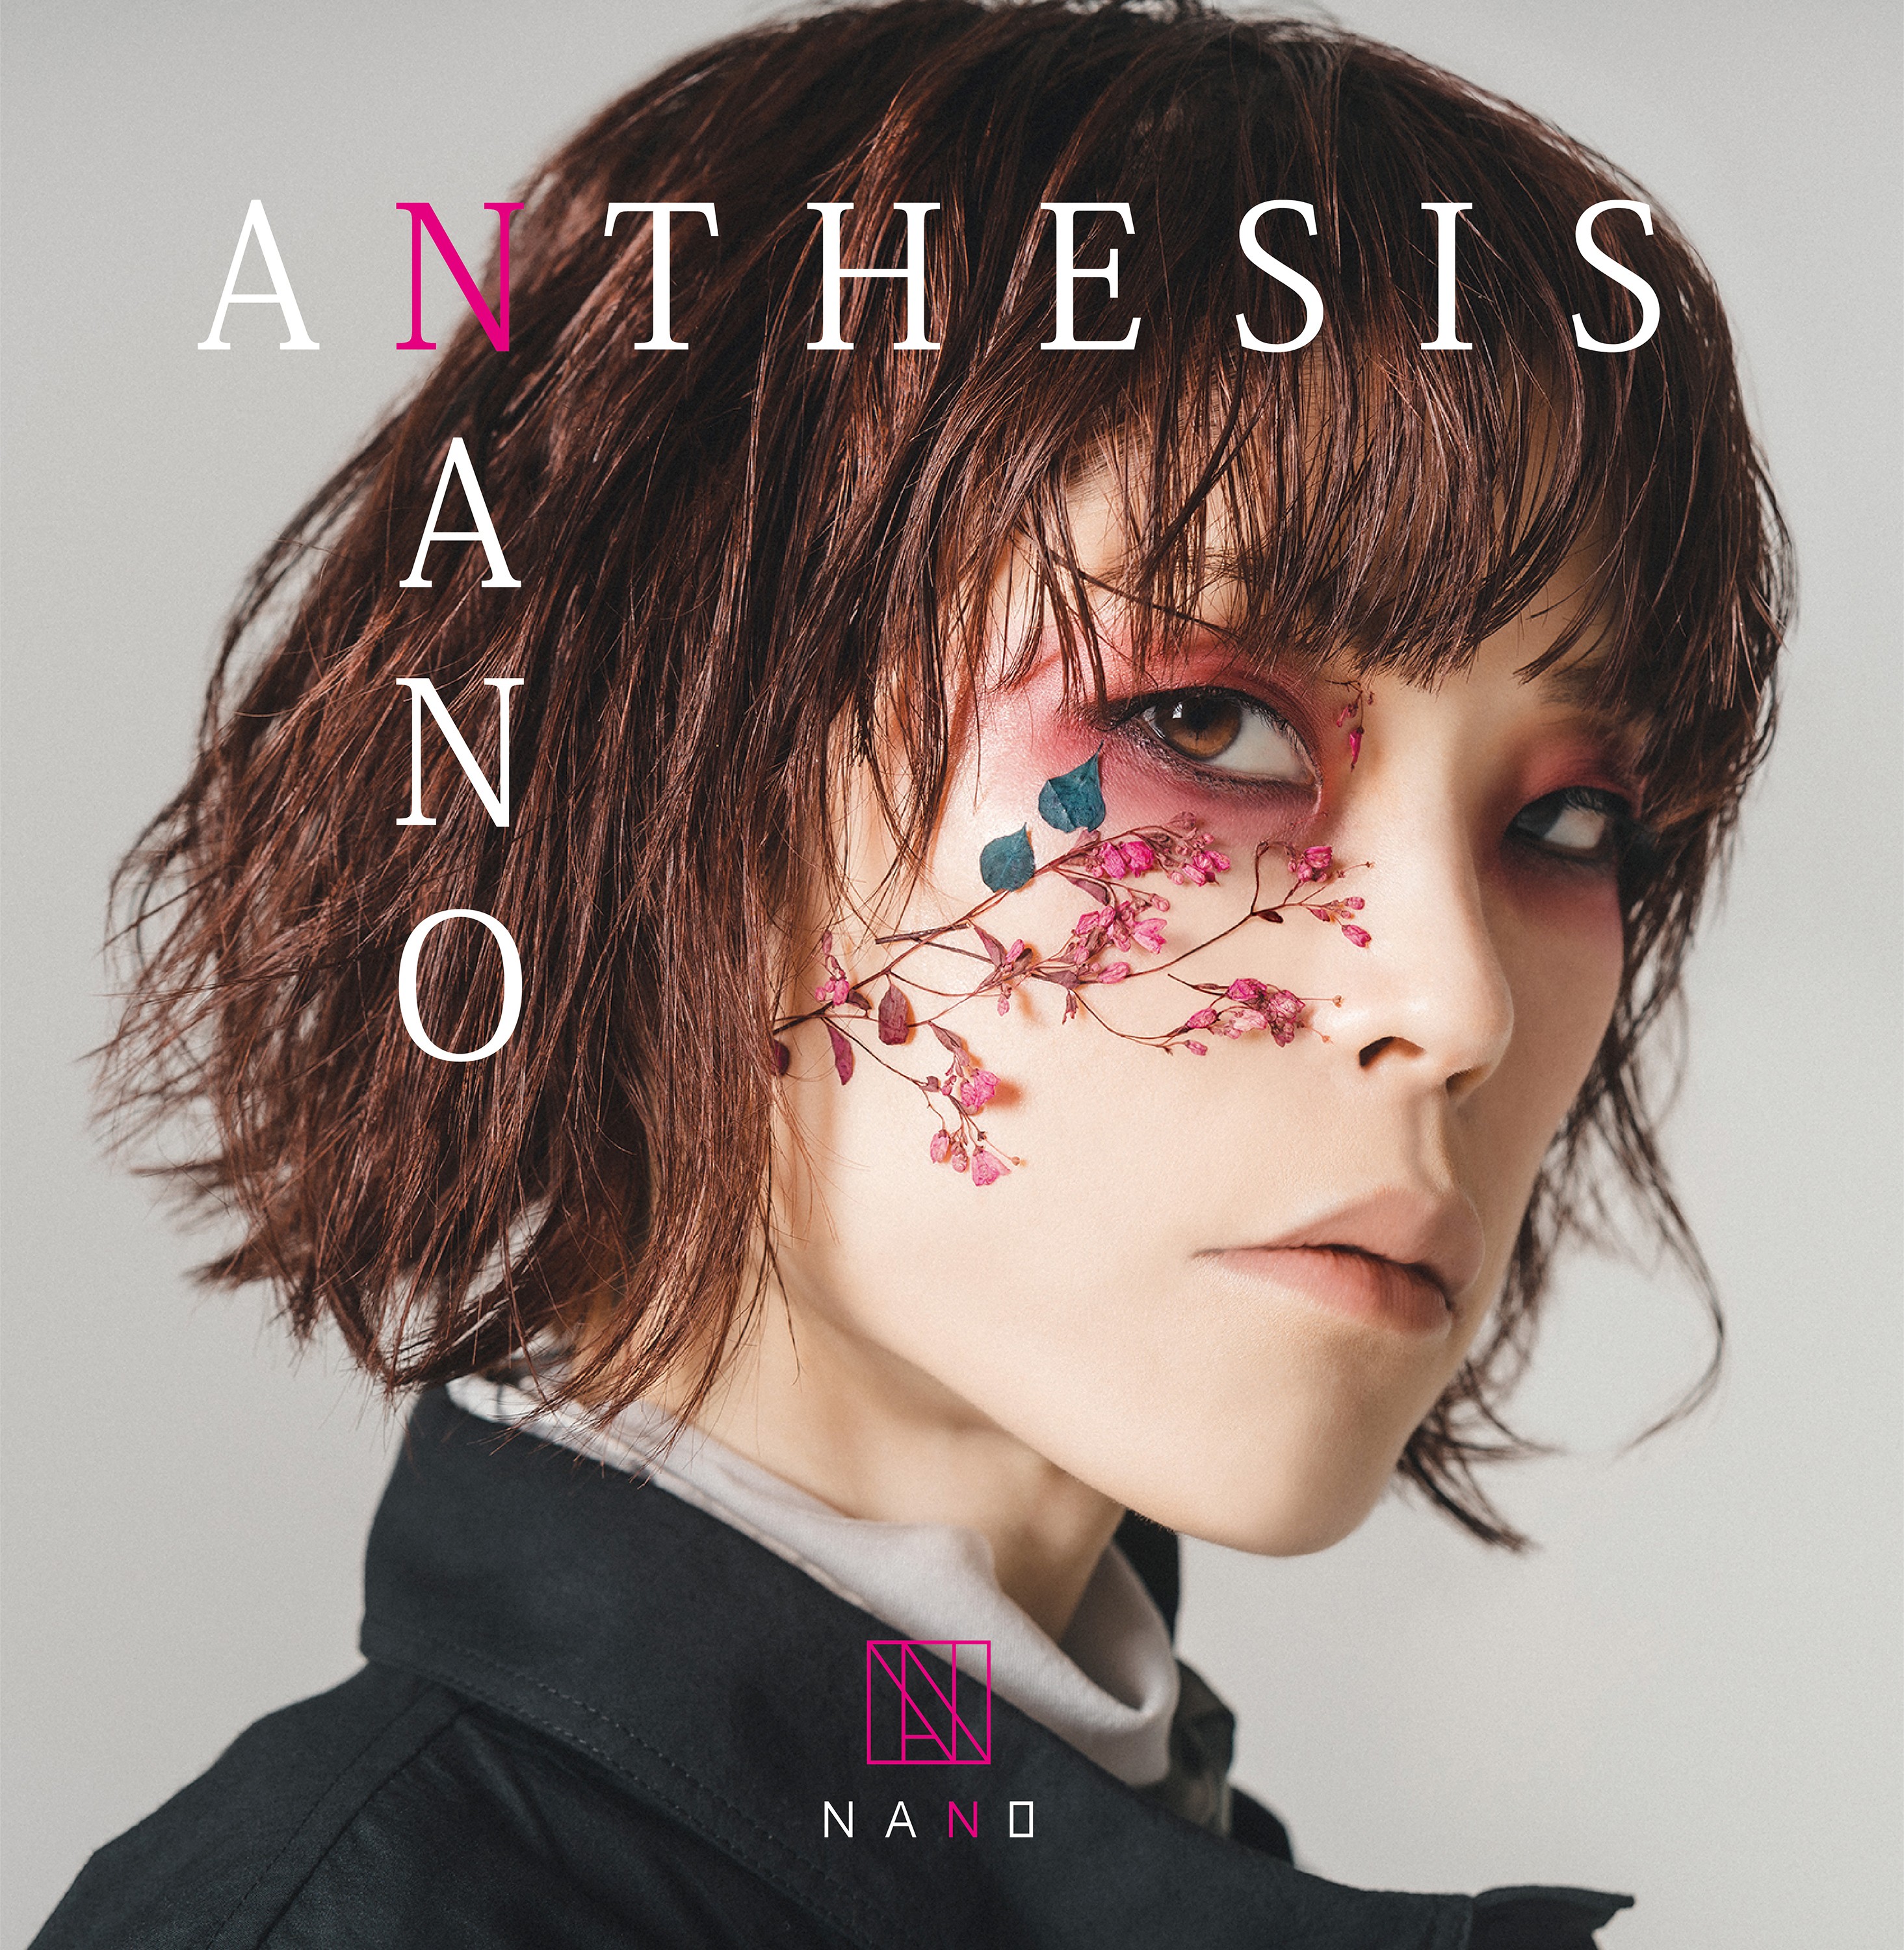 nano (ナノ) - ANTHESIS (2021-04-14) [FLAC 24bit/44,1kHz] Download